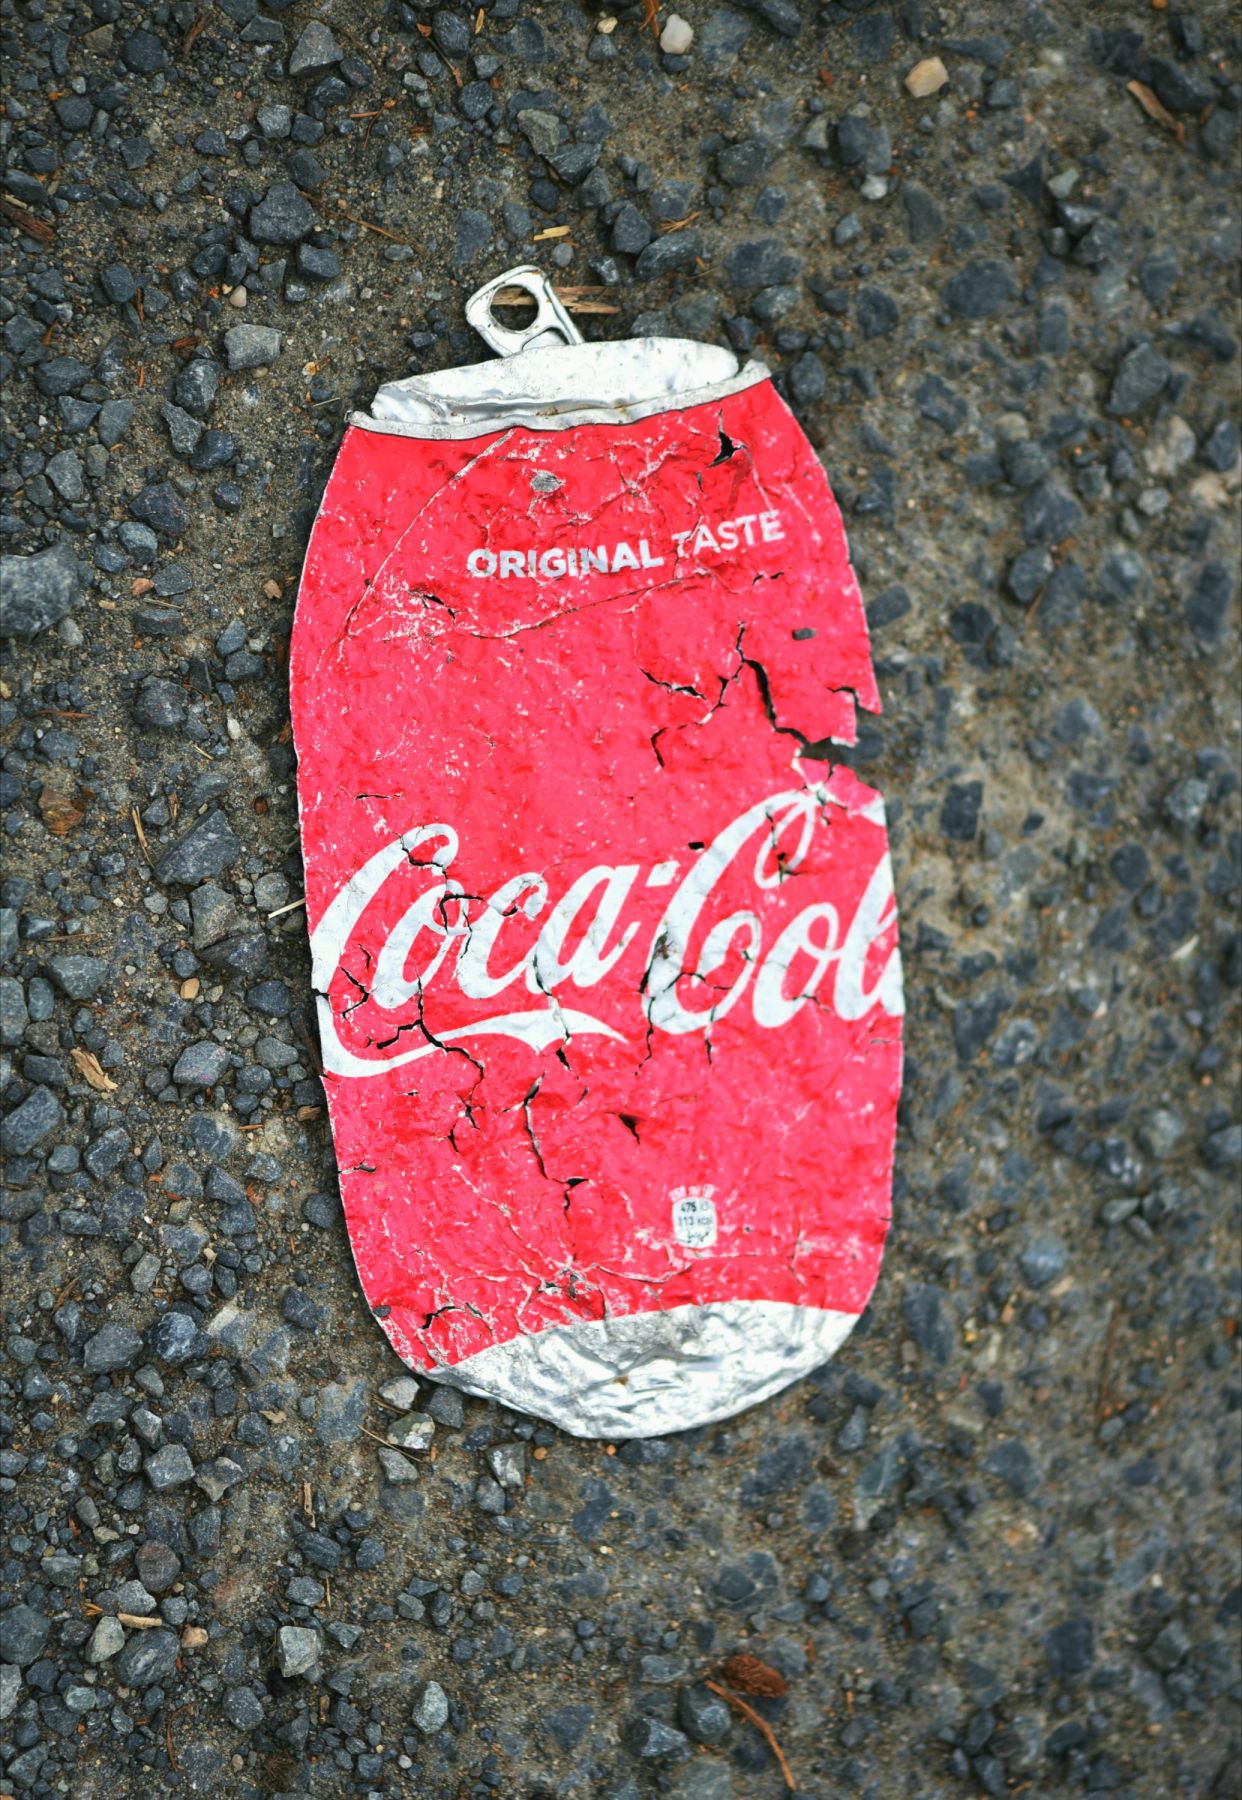 Coca Cola is dead!